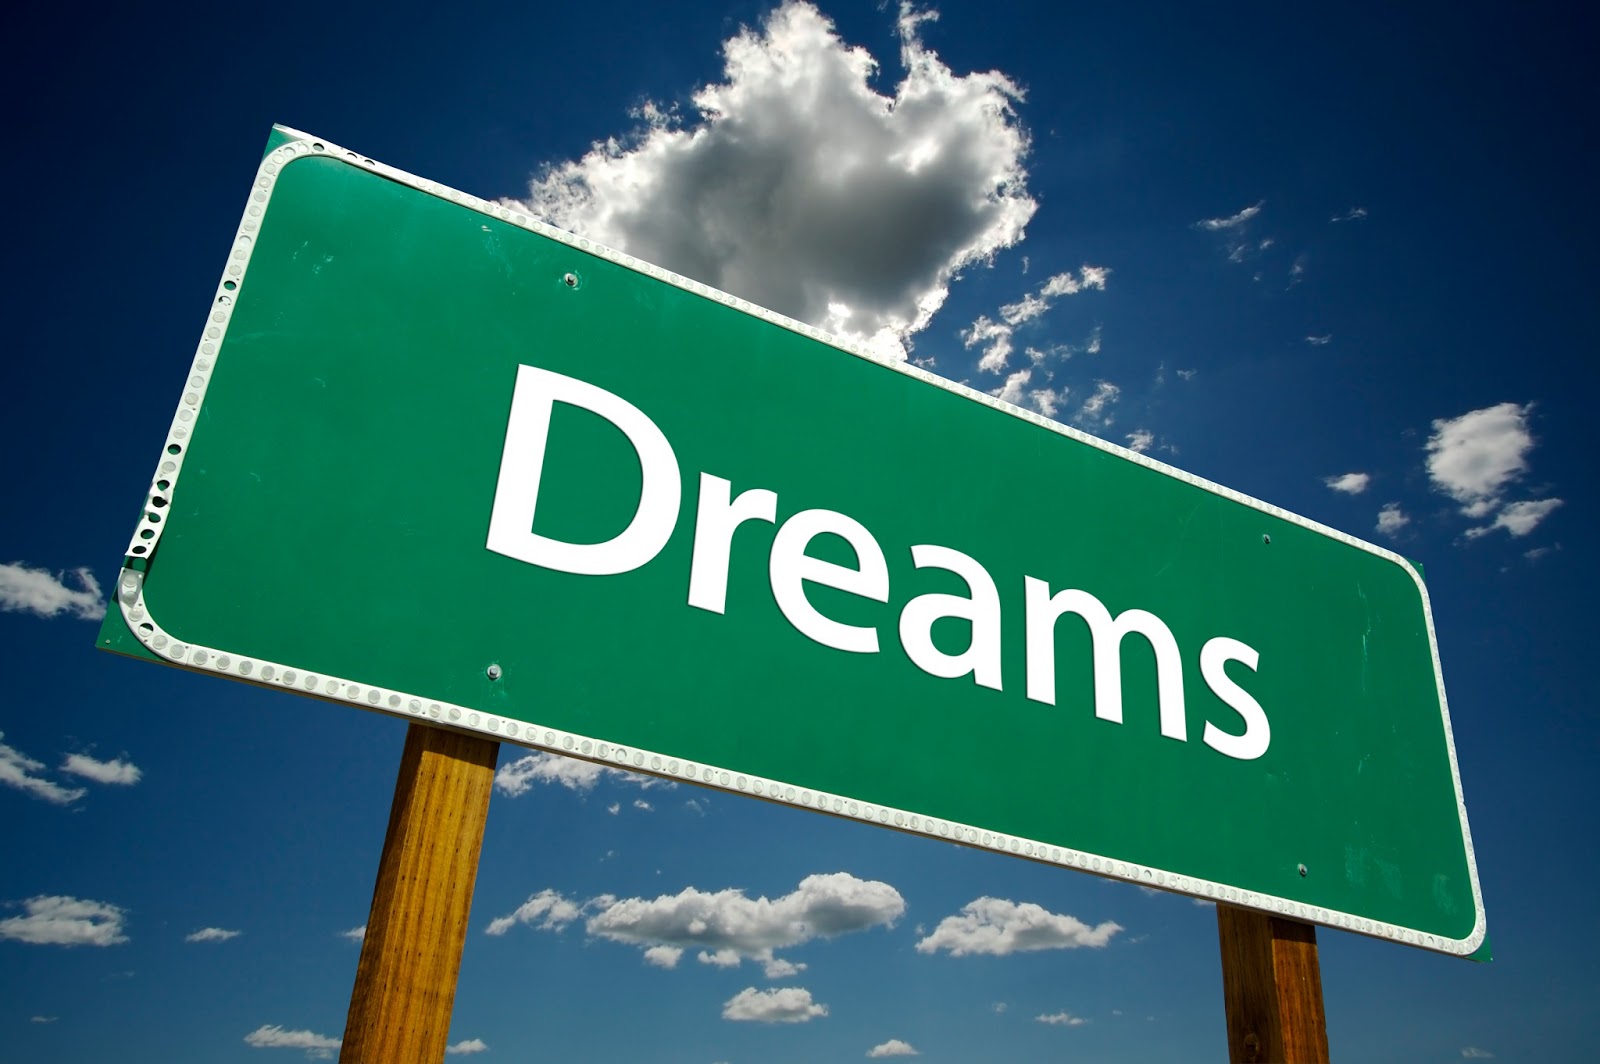 Sonno e sogni: Sognare fa bene alla mente